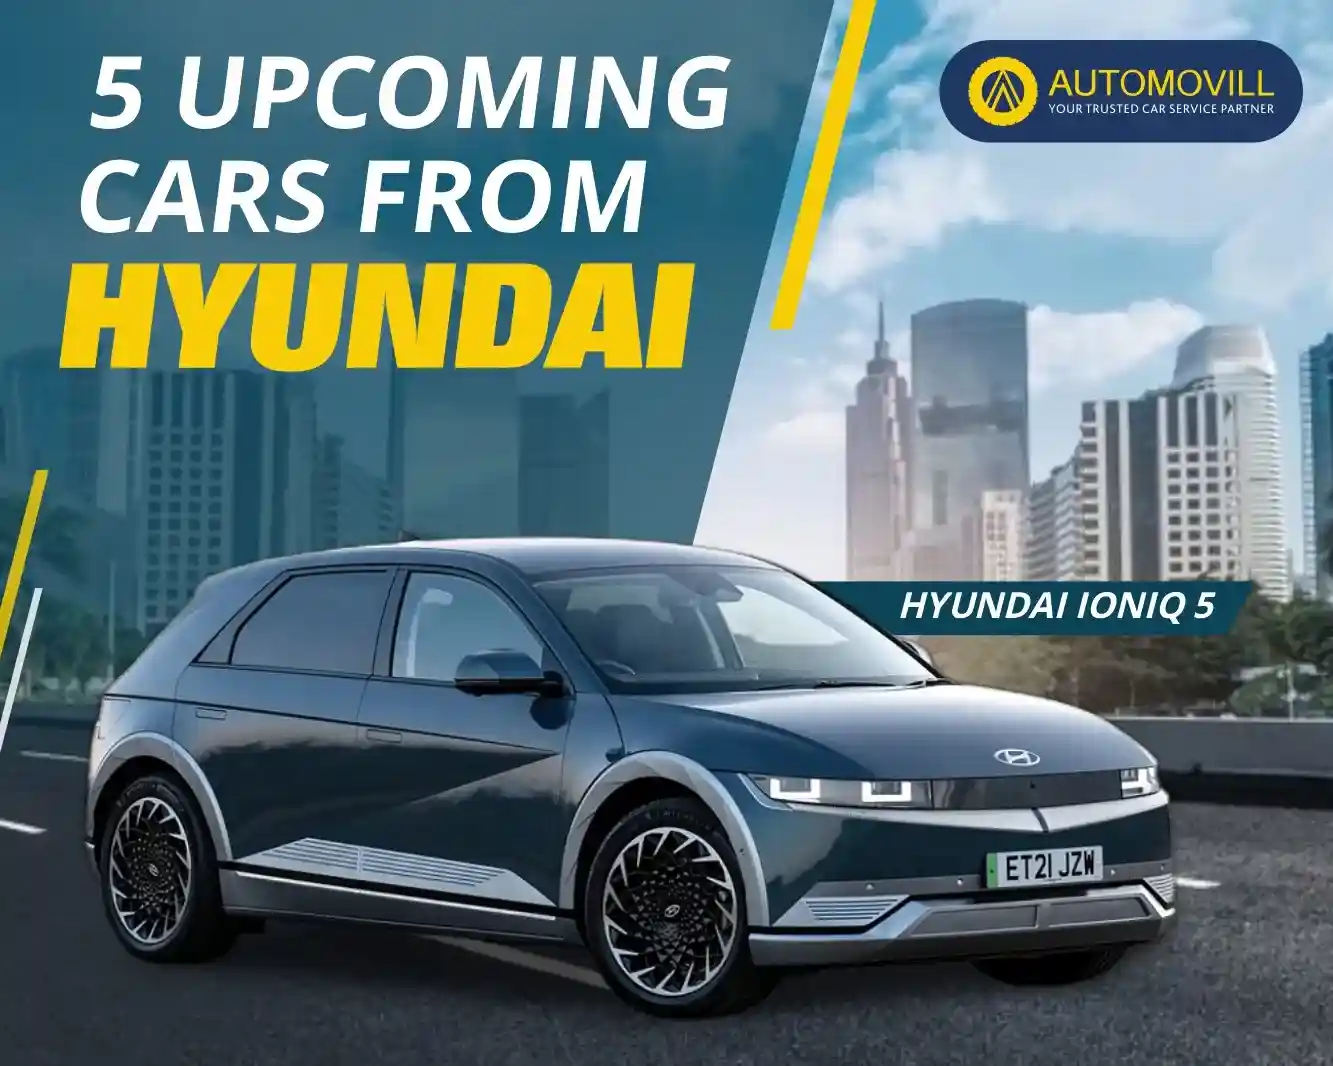 Upcoming Cars from Hyundai in India